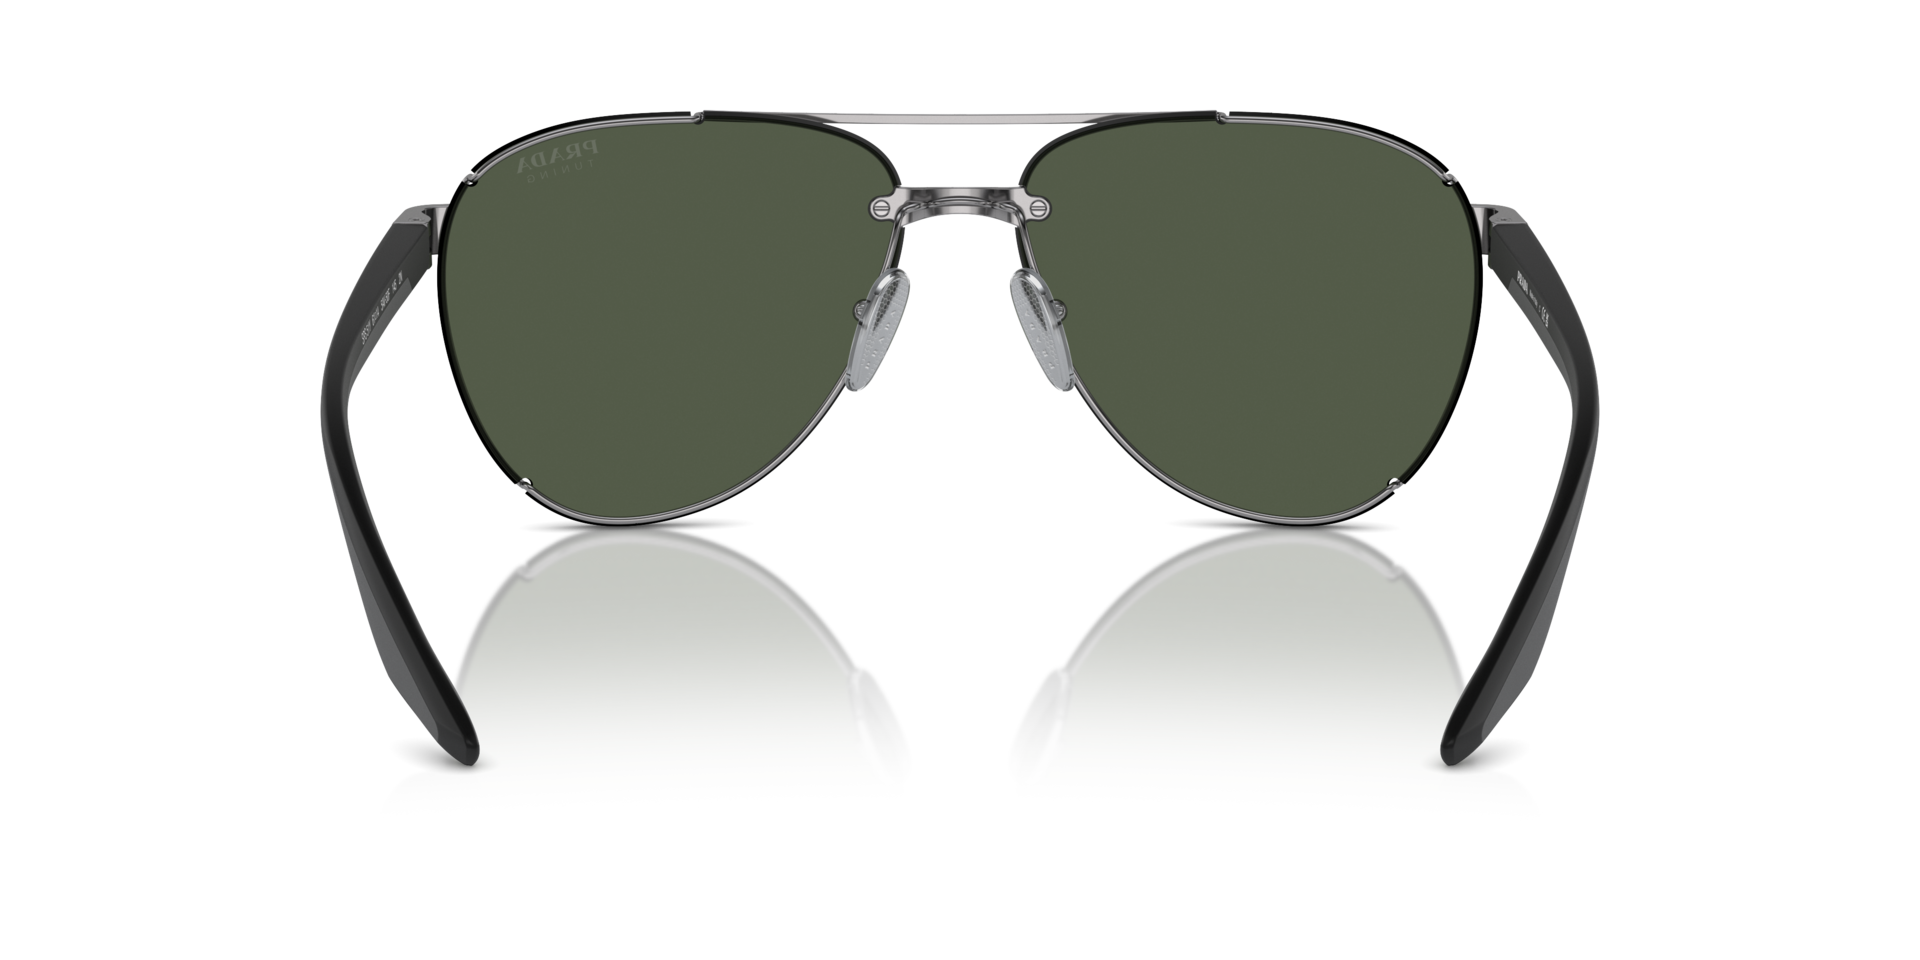 Das Bild zeigt die Sonnenbrille PS51YS 5AV50F von der Marke Prada Linea Rossa in silber.